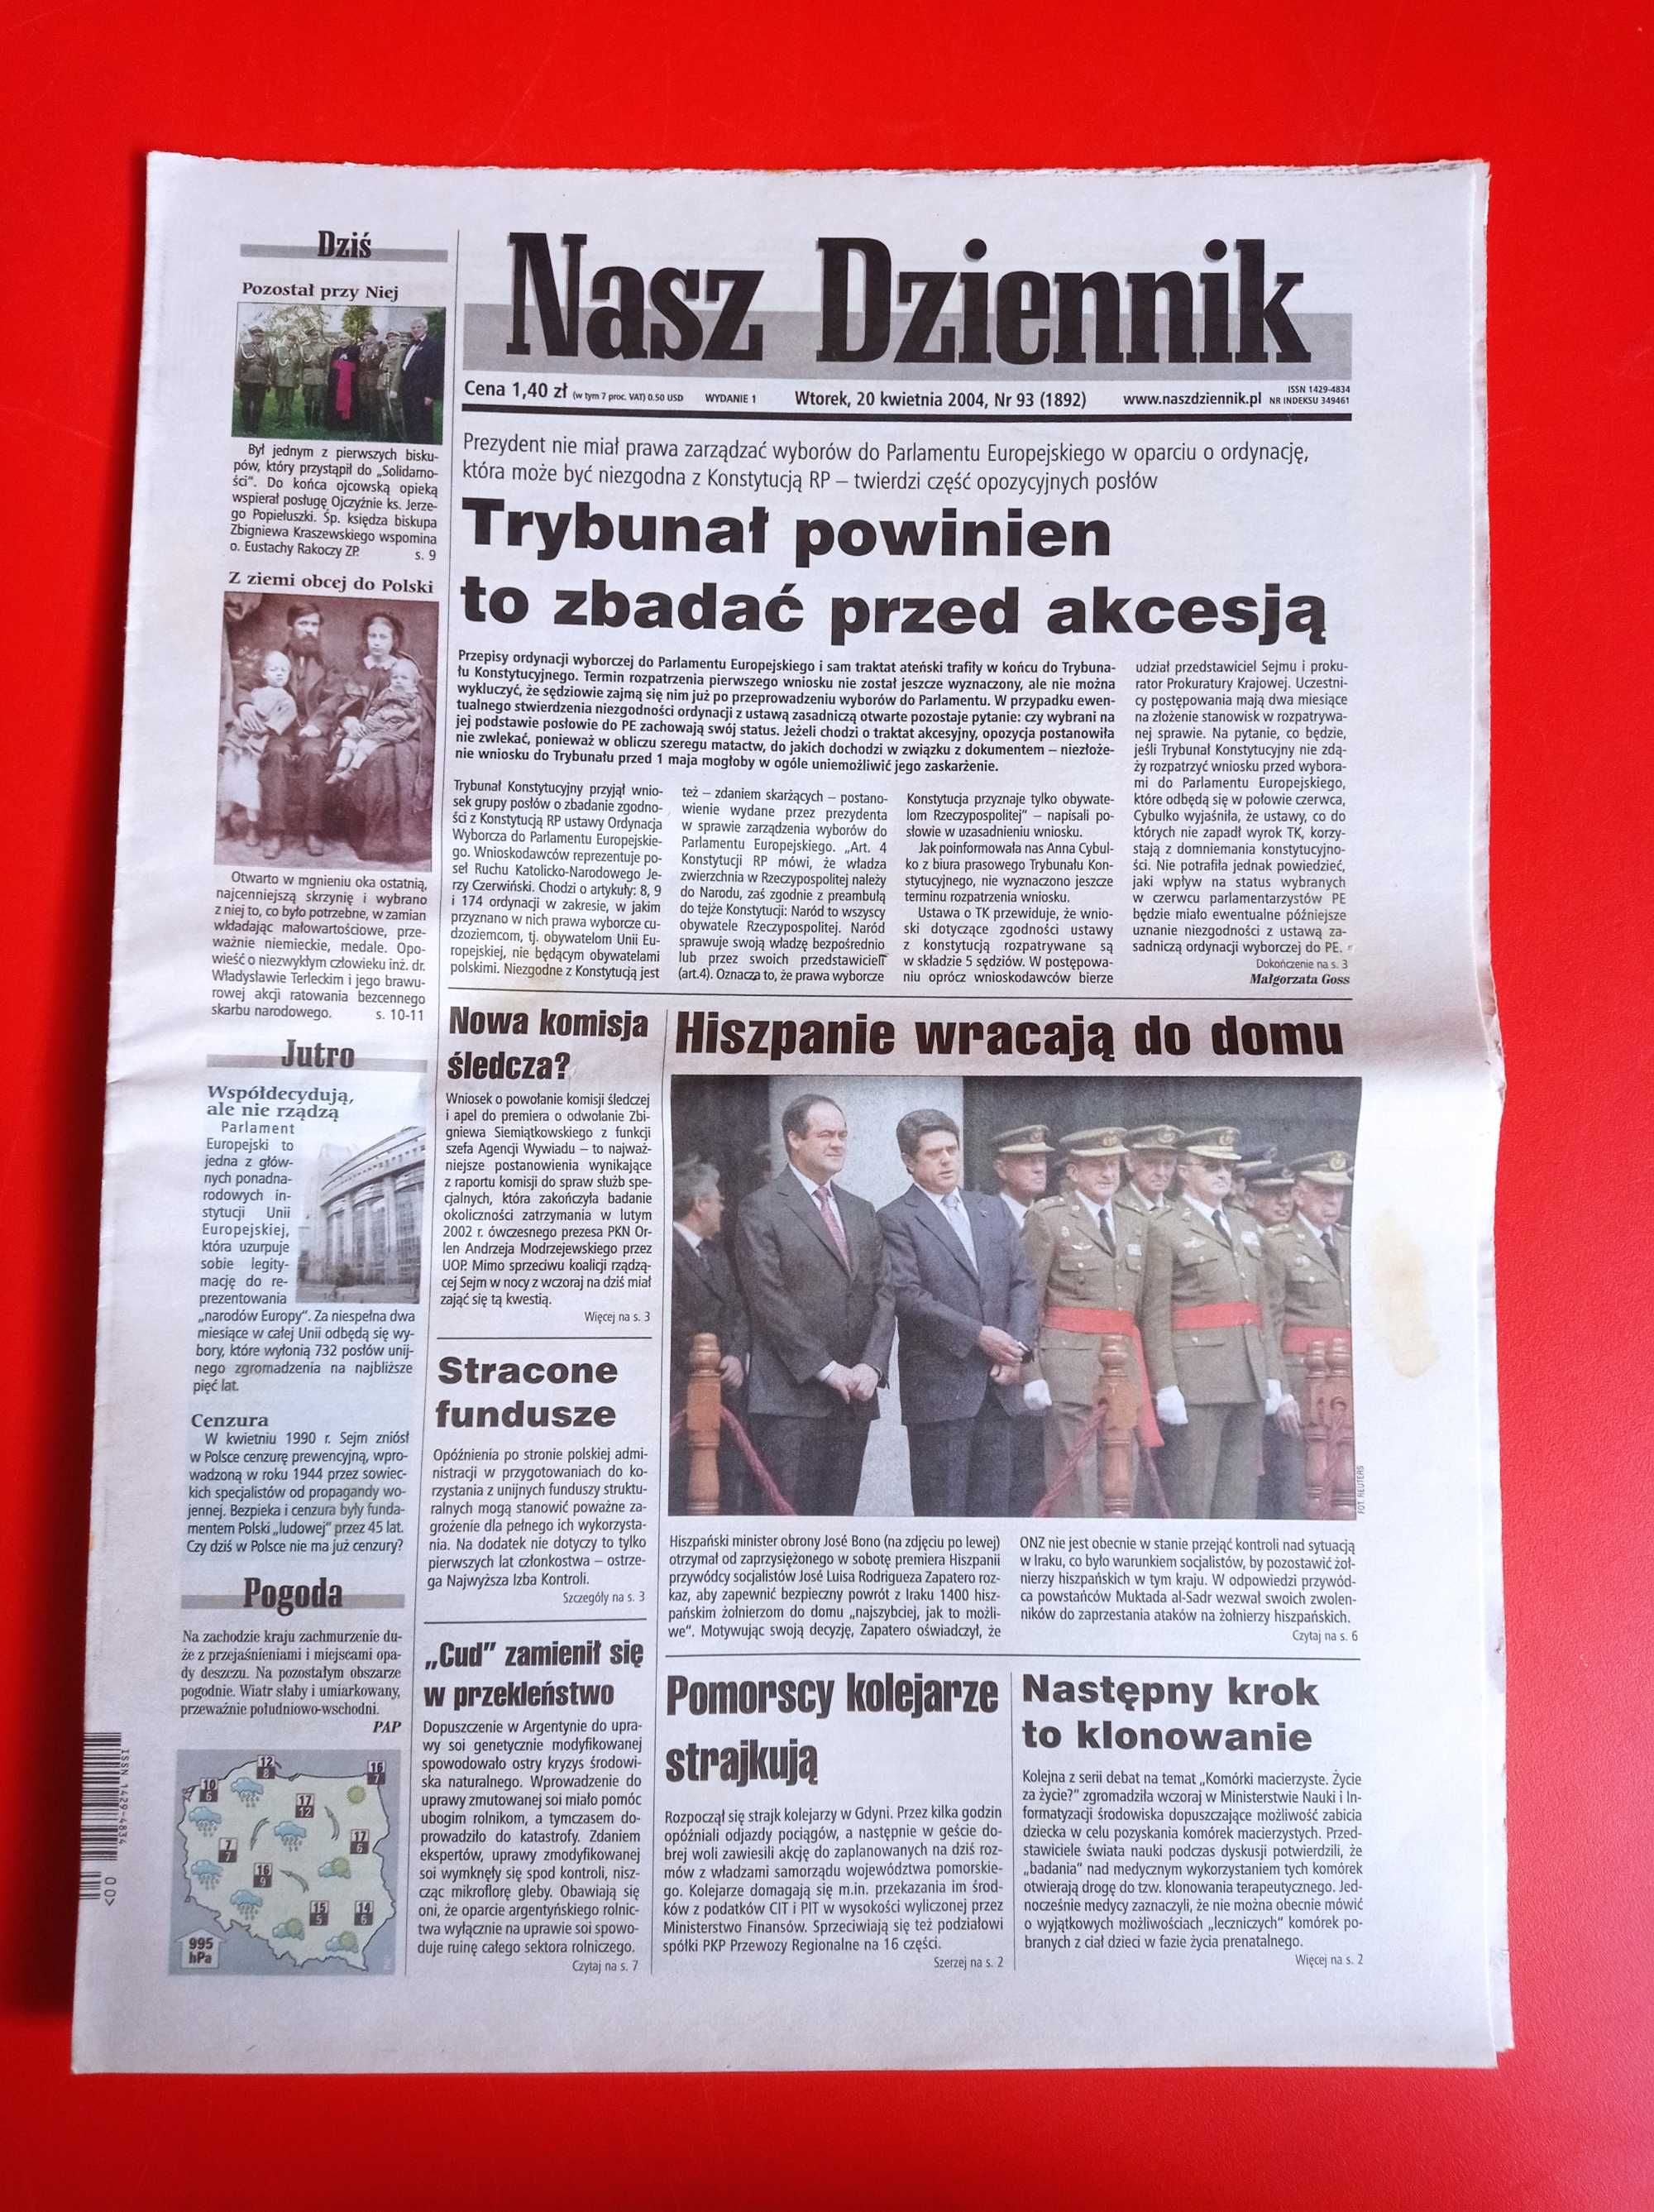 Nasz Dziennik, nr 93/2004, 20 kwietnia 2004